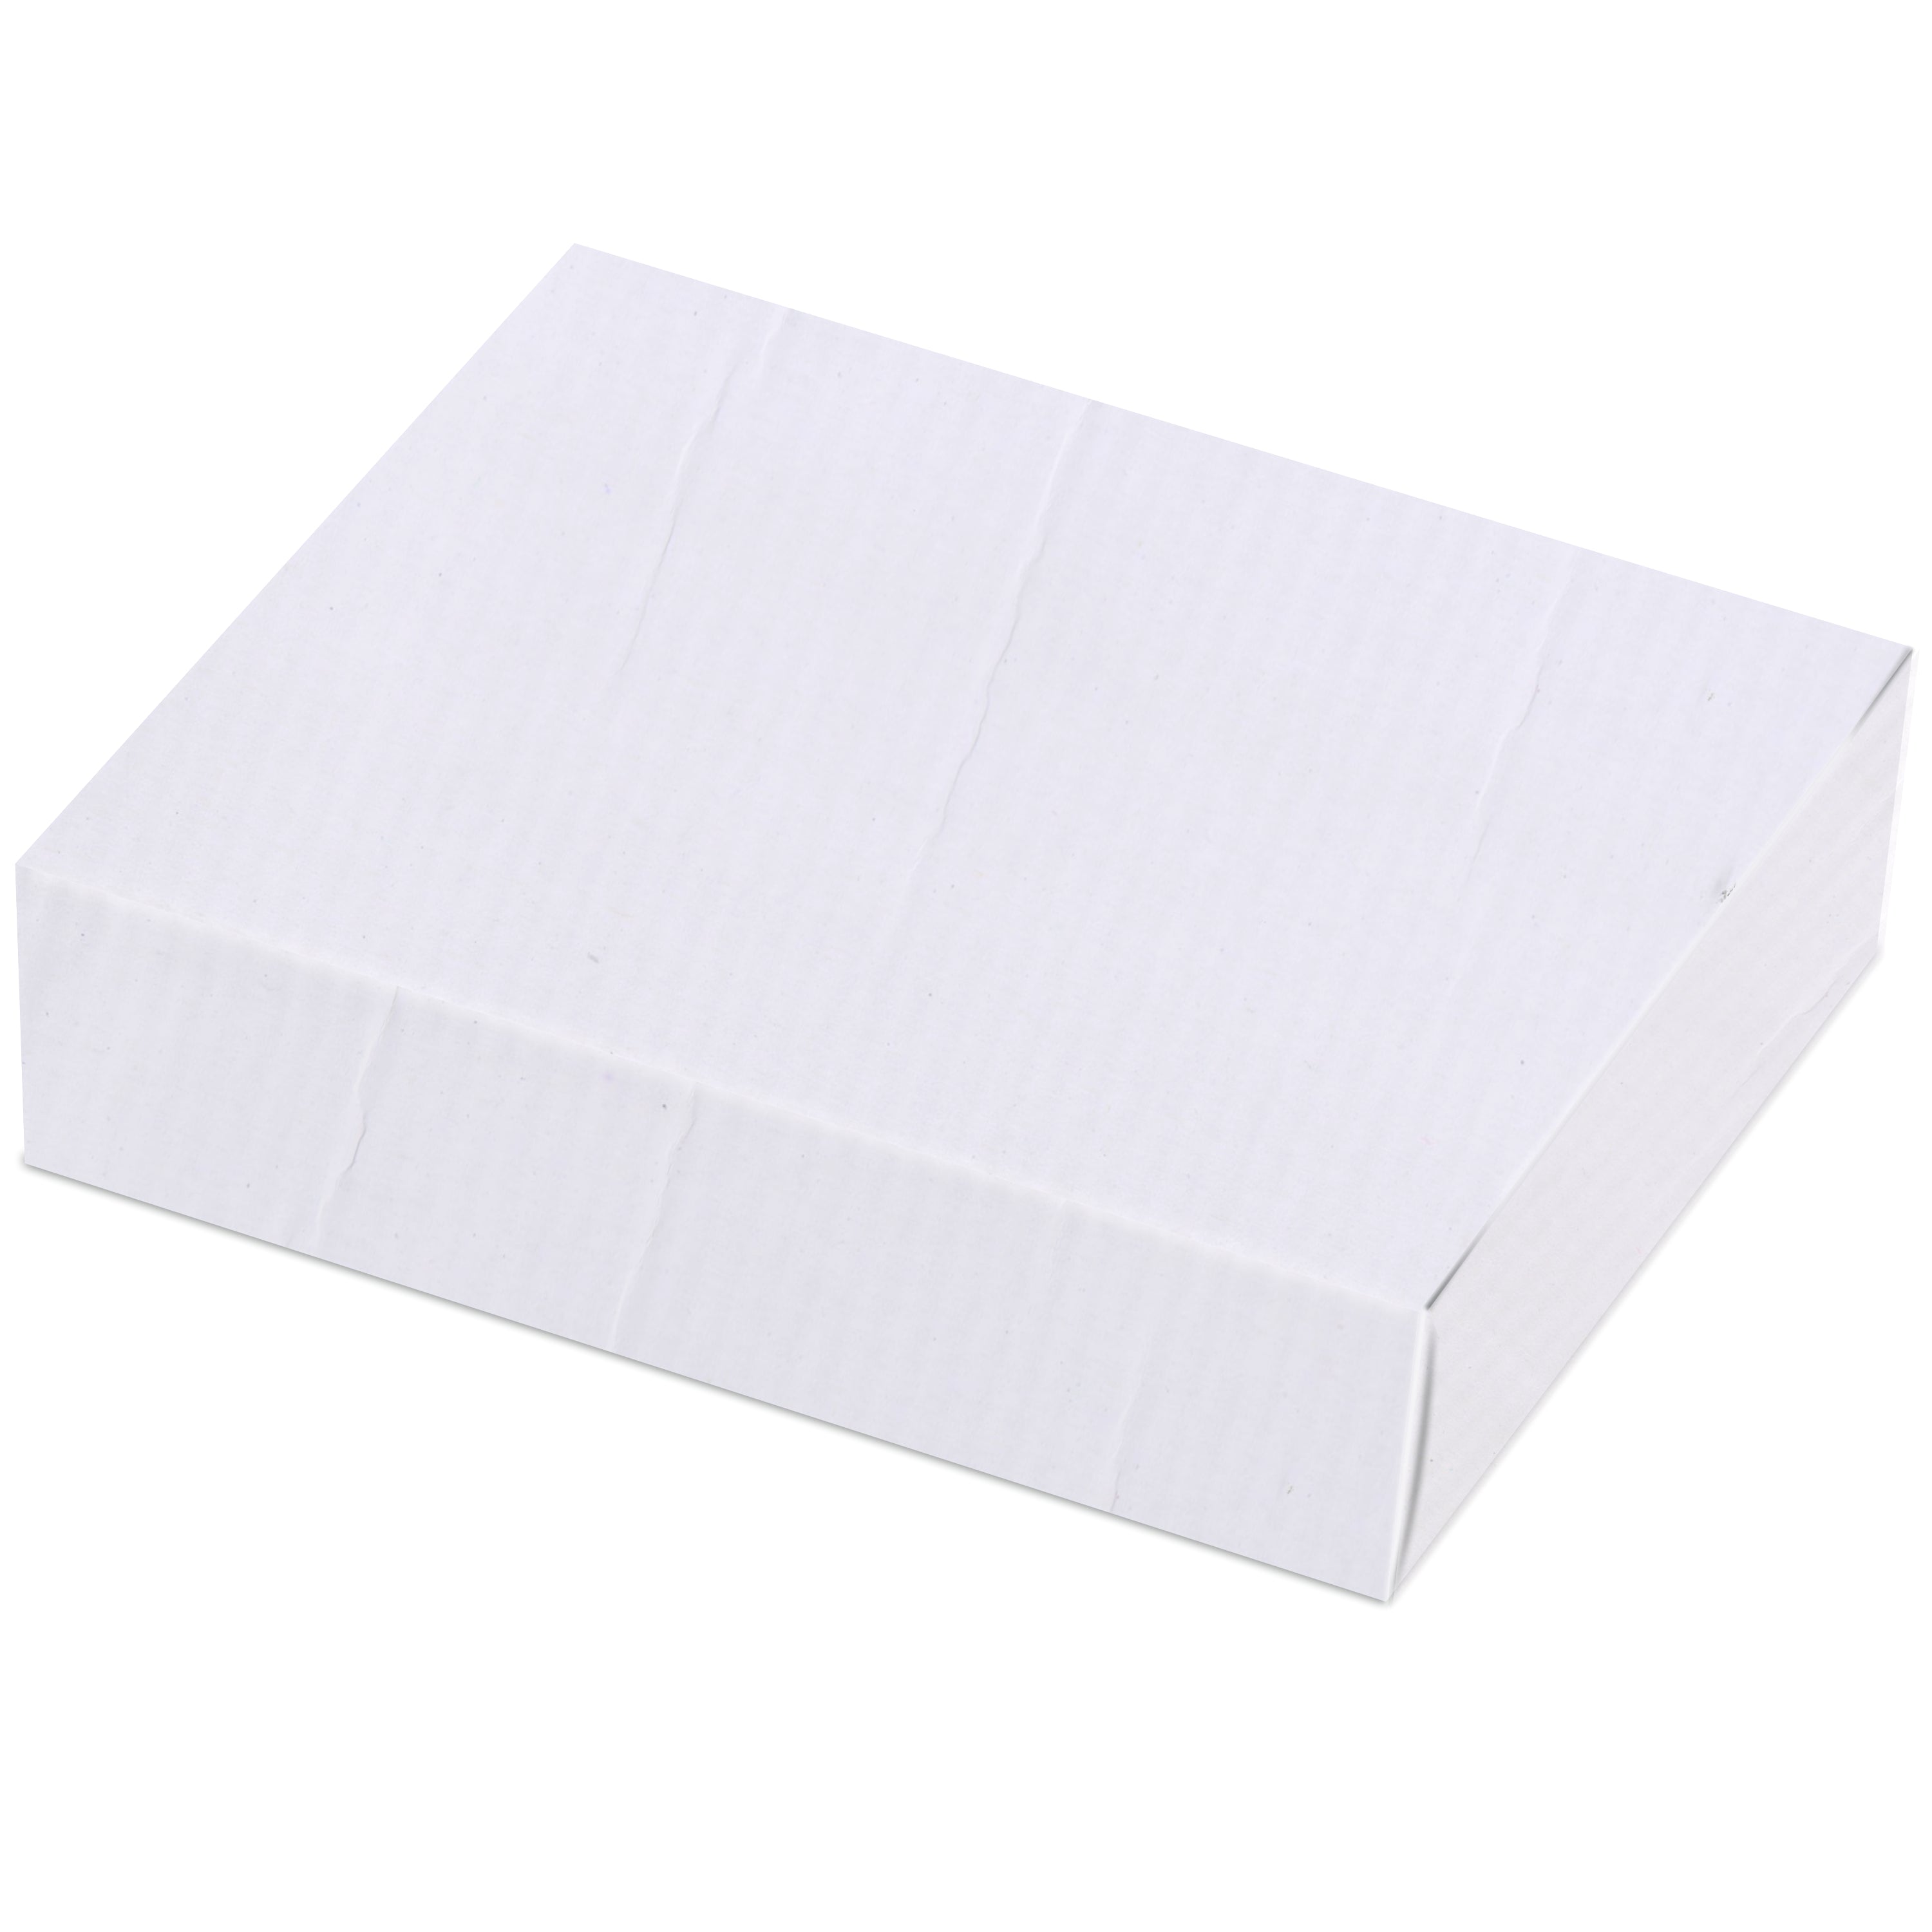 Zenvista Premium White Corrugated Box |13 x 4.6 x 18.5 cm | Pack of 10